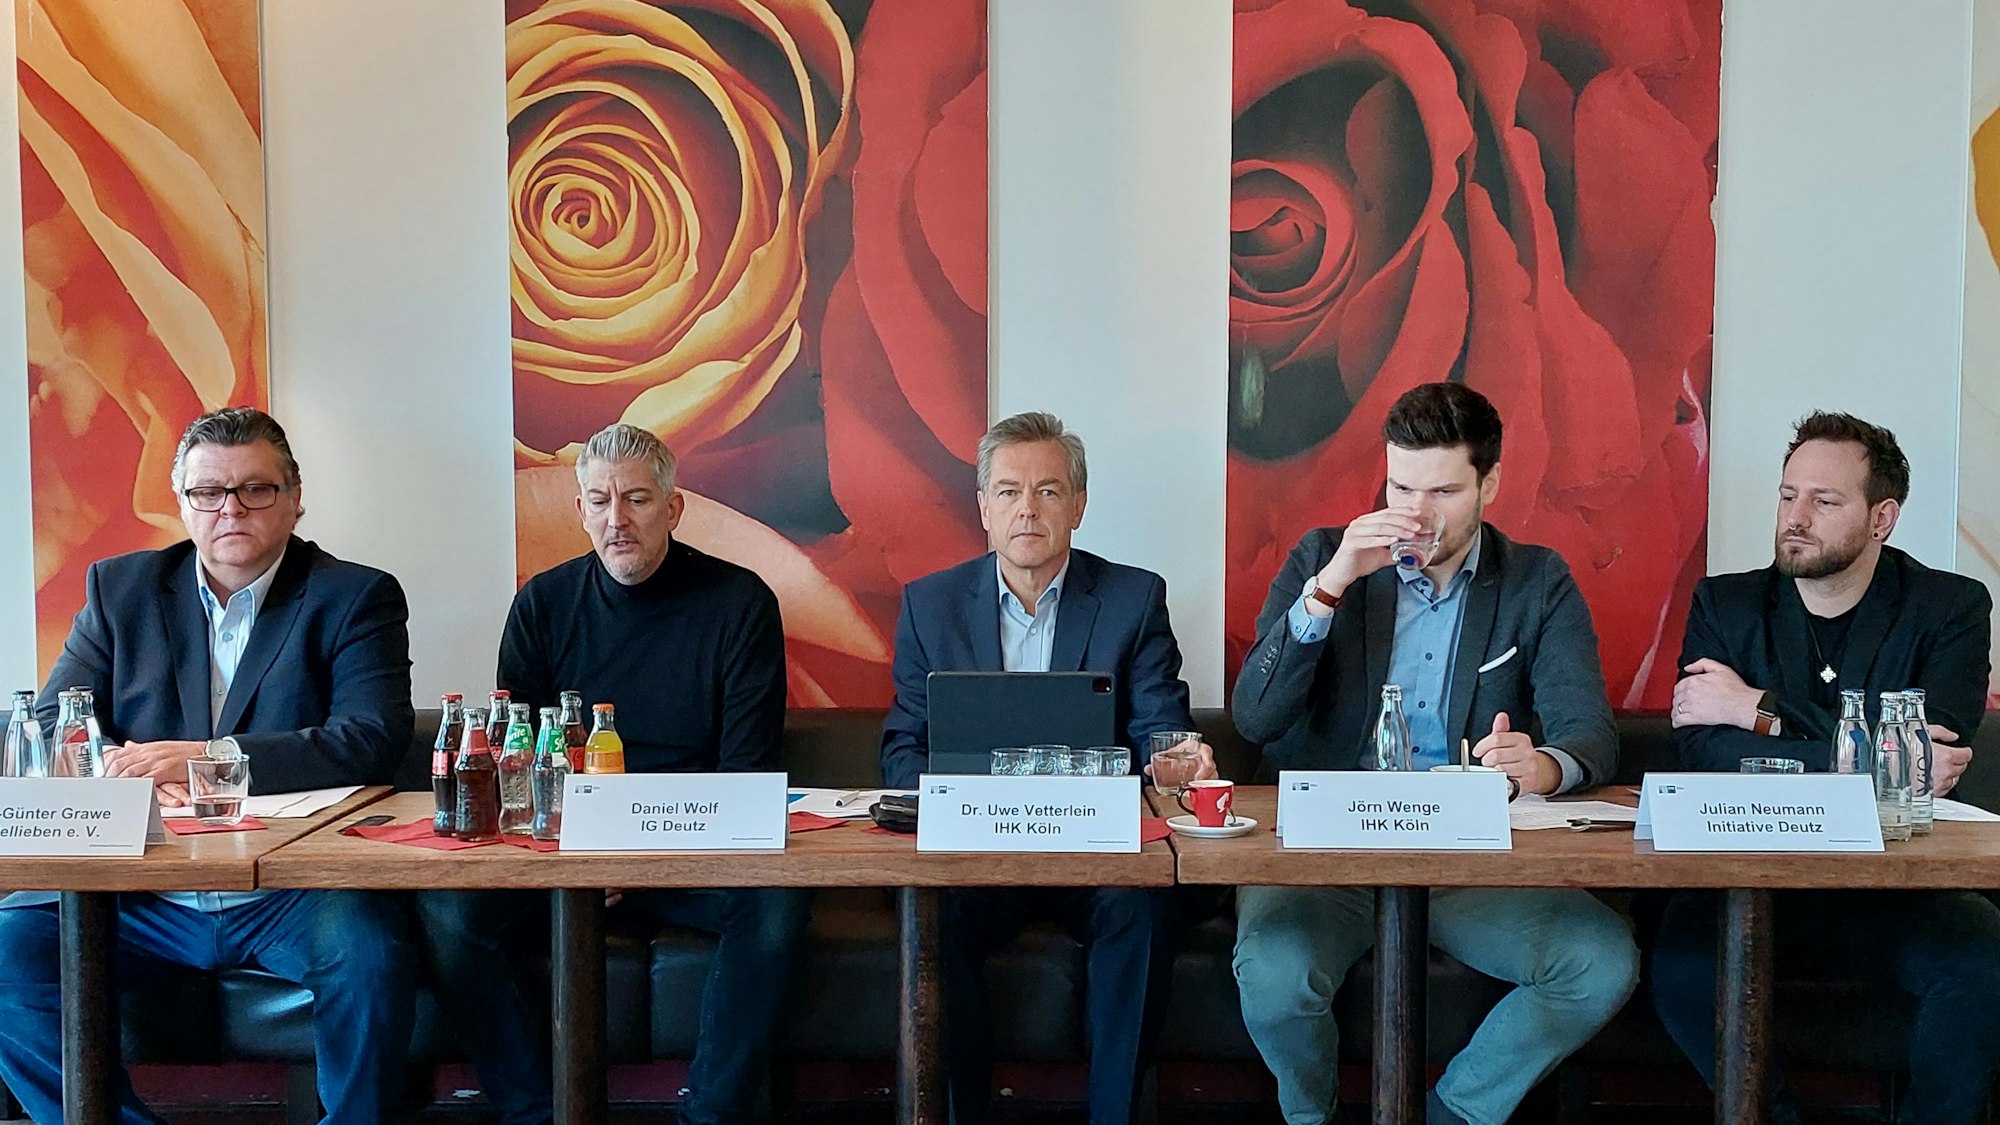 An einem Tisch sitzen Handelskümmerer Hans-Günther Grawe, Daniel Wolf (IG Deutz), Dr. Uwe Vetterlein (IHK), Jörn Wenge (IHK) und Julian Neumann (Initiative Deutz) und stellen die Umfrage vor.